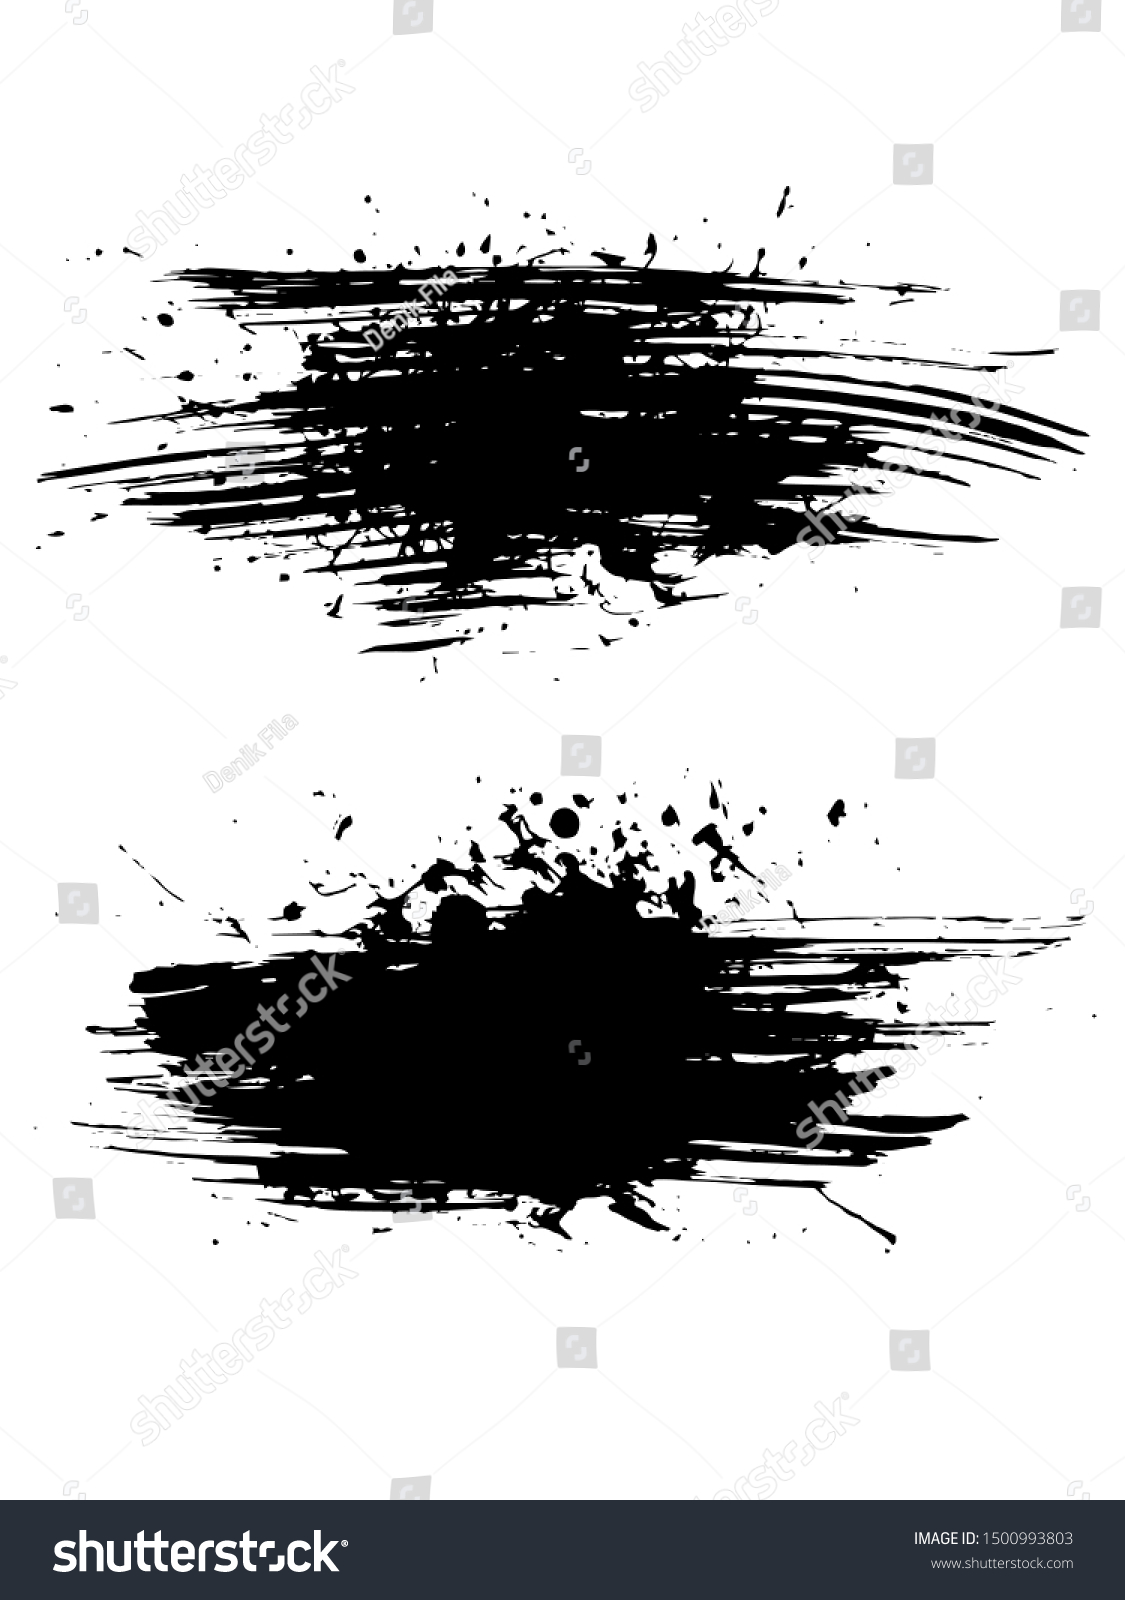 SVG of Ink Paintbrush Splatter Brushed Grunge Style Vector Art Set for Background, Cover, Banner, Poster or Wallpaper Design Download svg